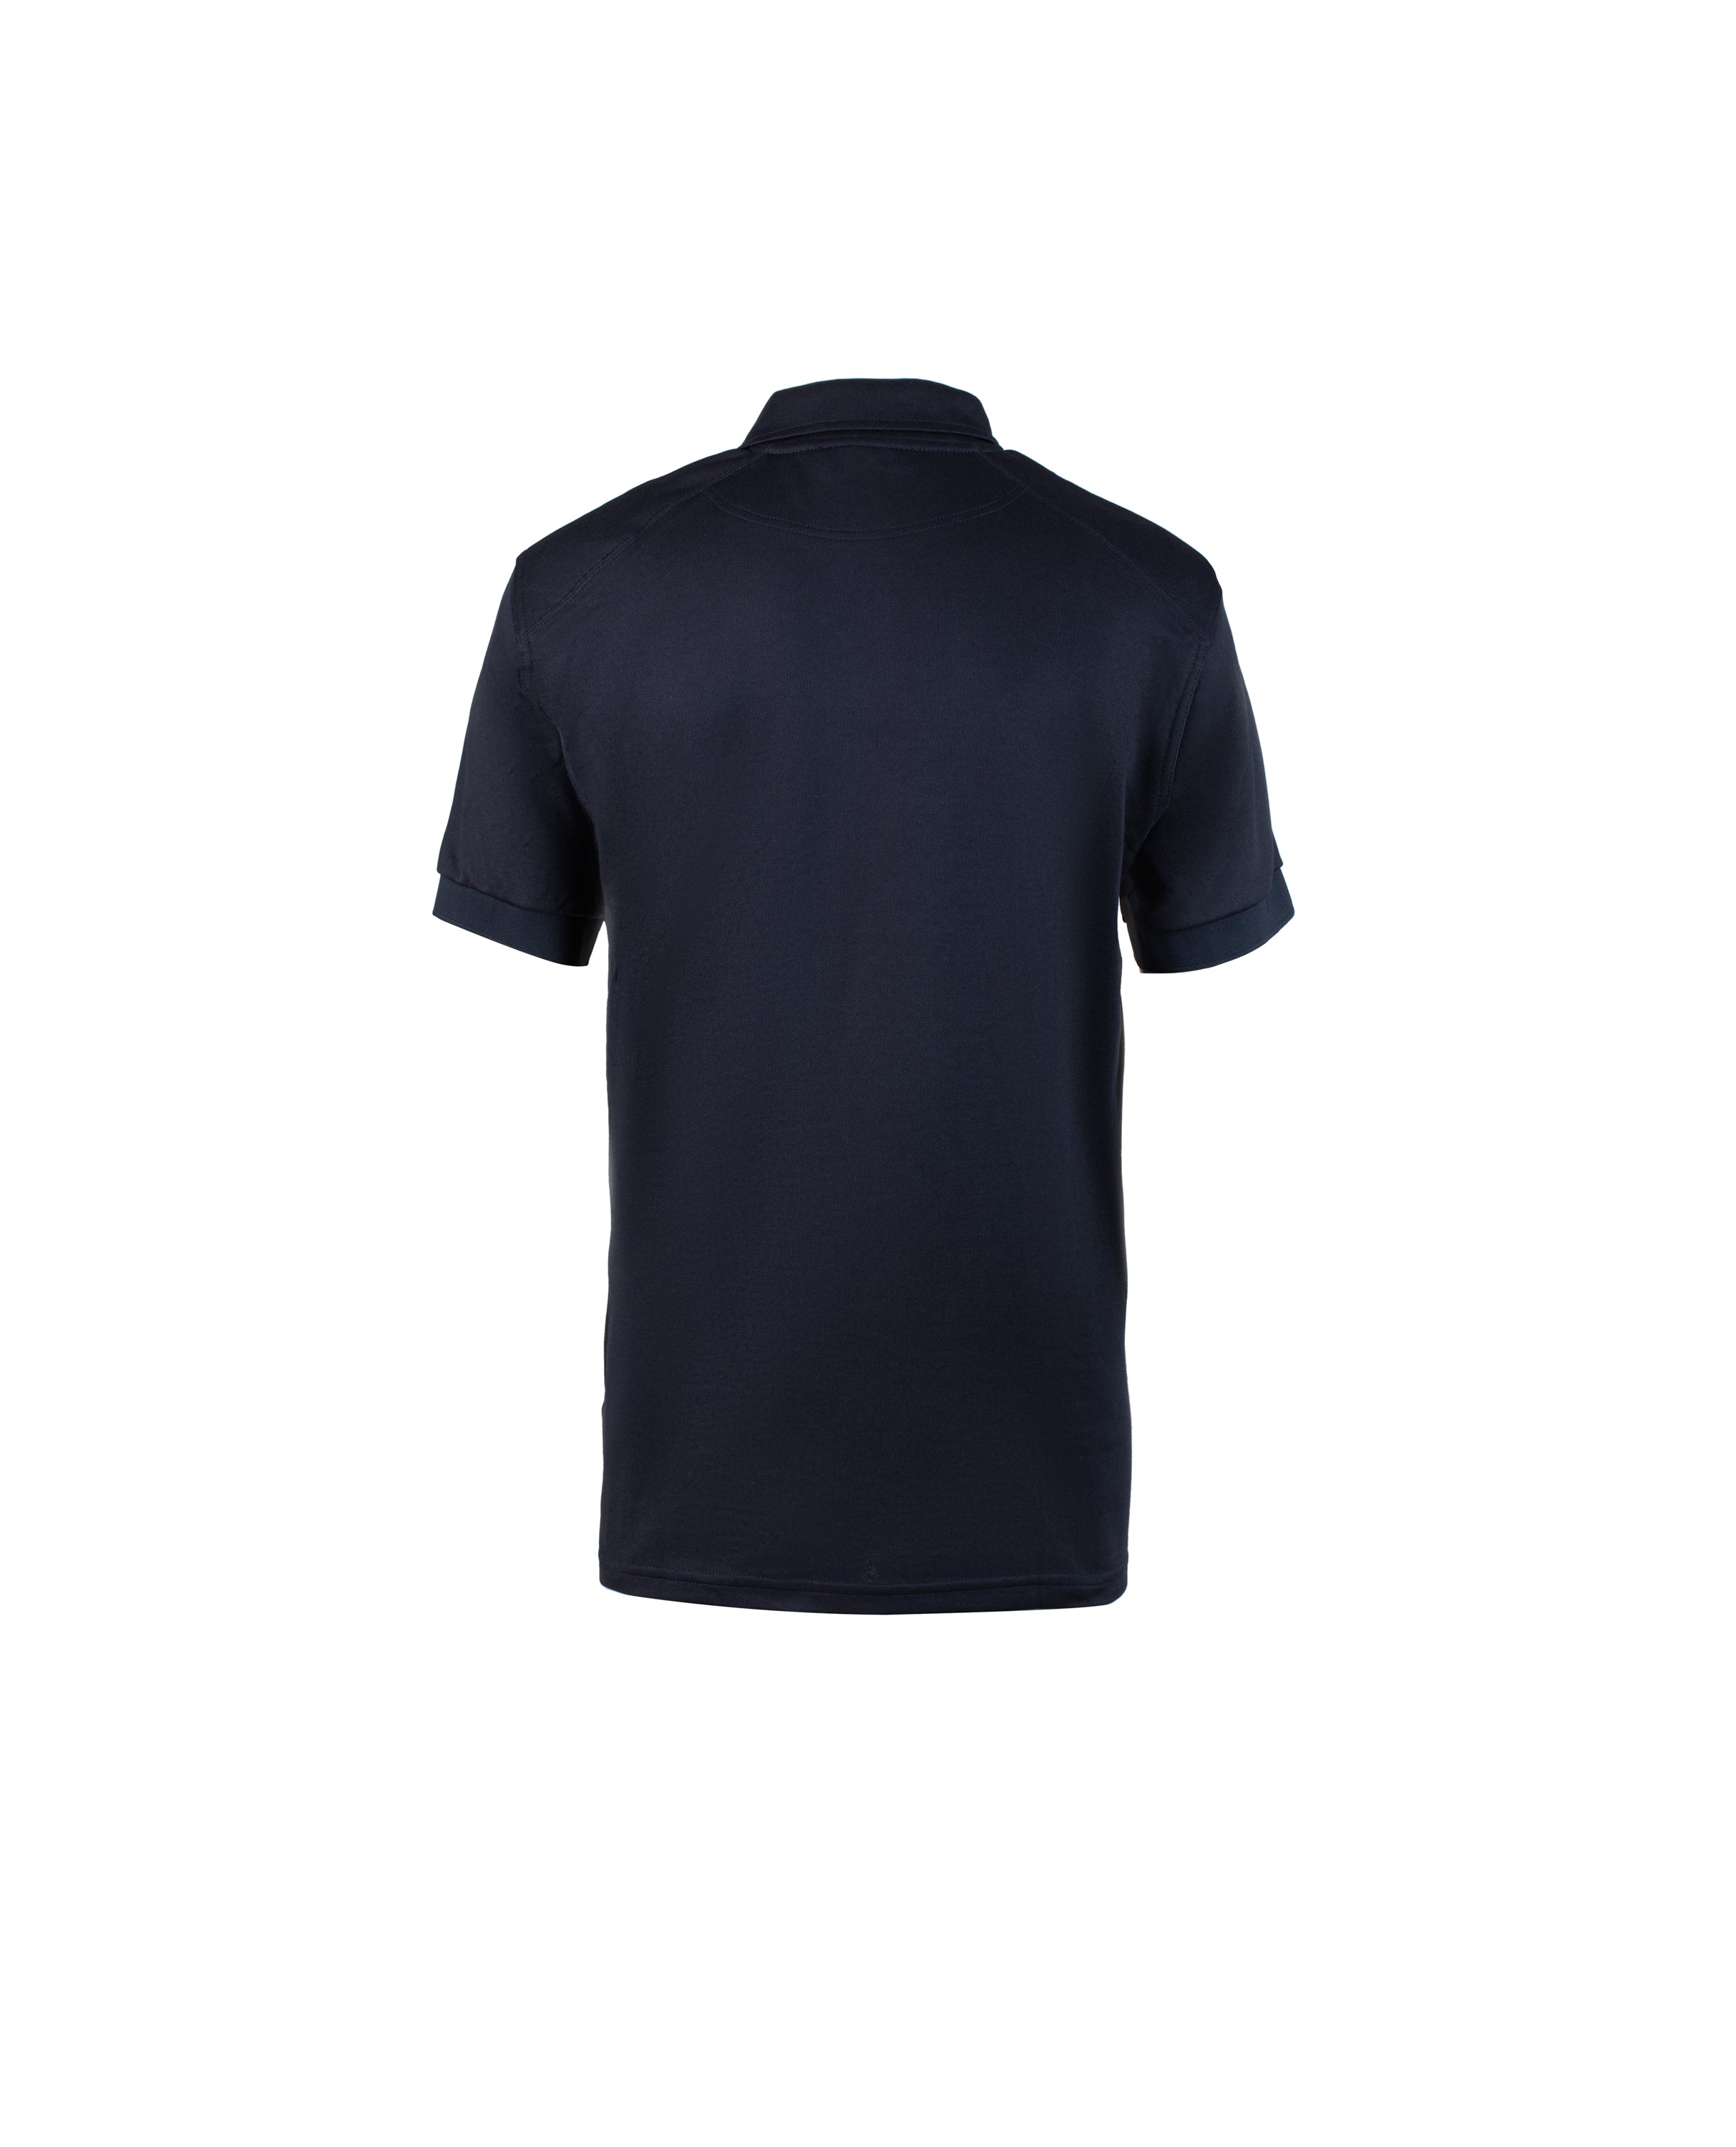 MC polo shirts - 400900